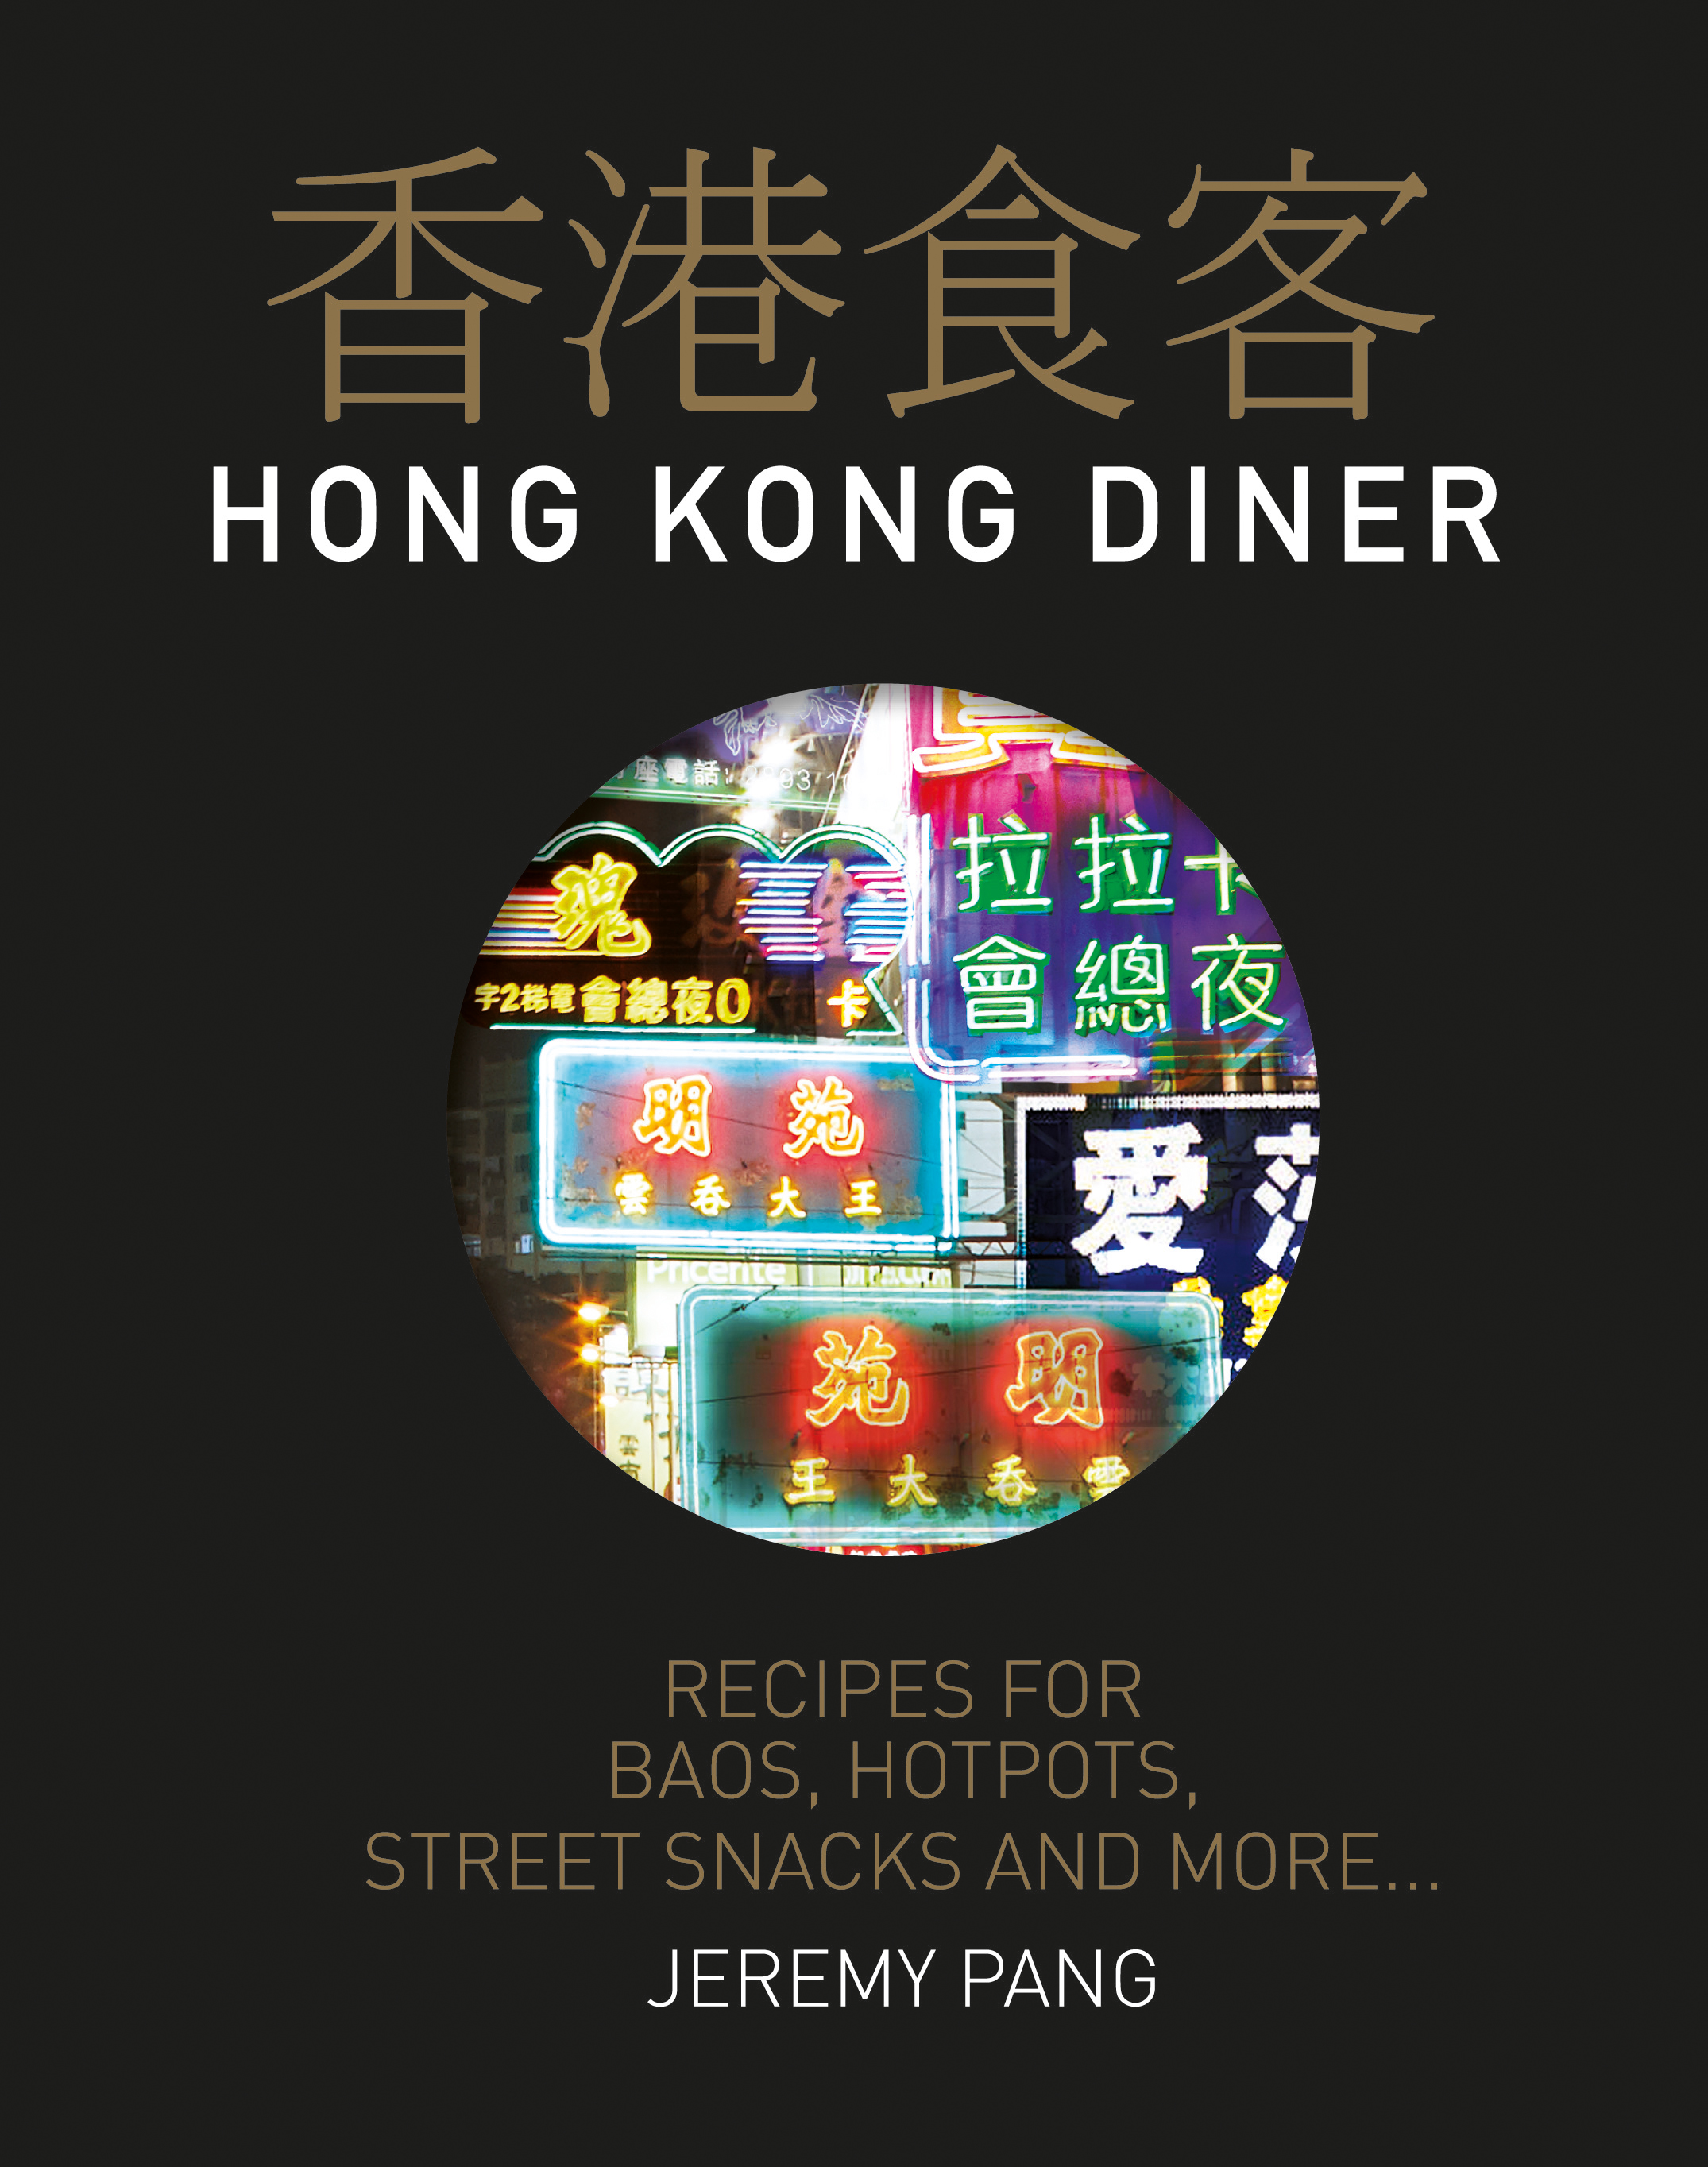 Hong Kong Diner